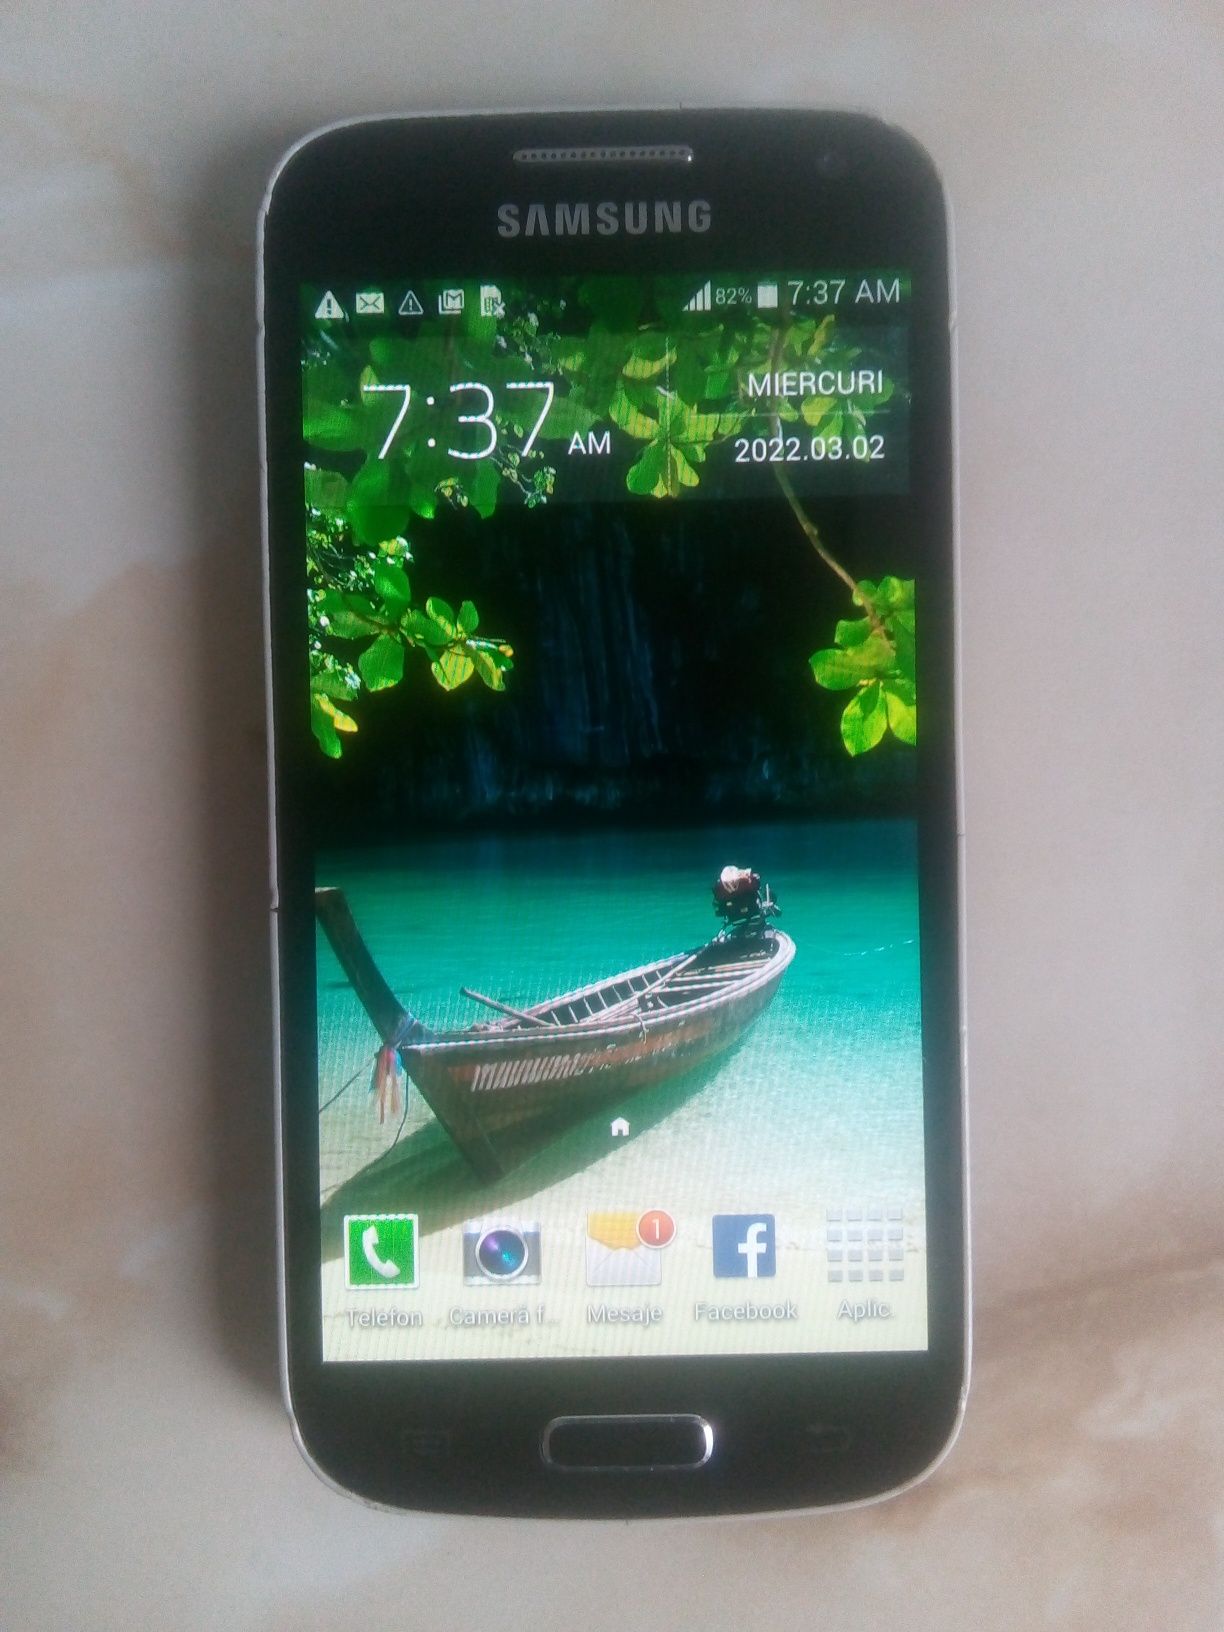 Vând telefon Samsung Galaxy S4 Mini negru NEcodat //poze reale